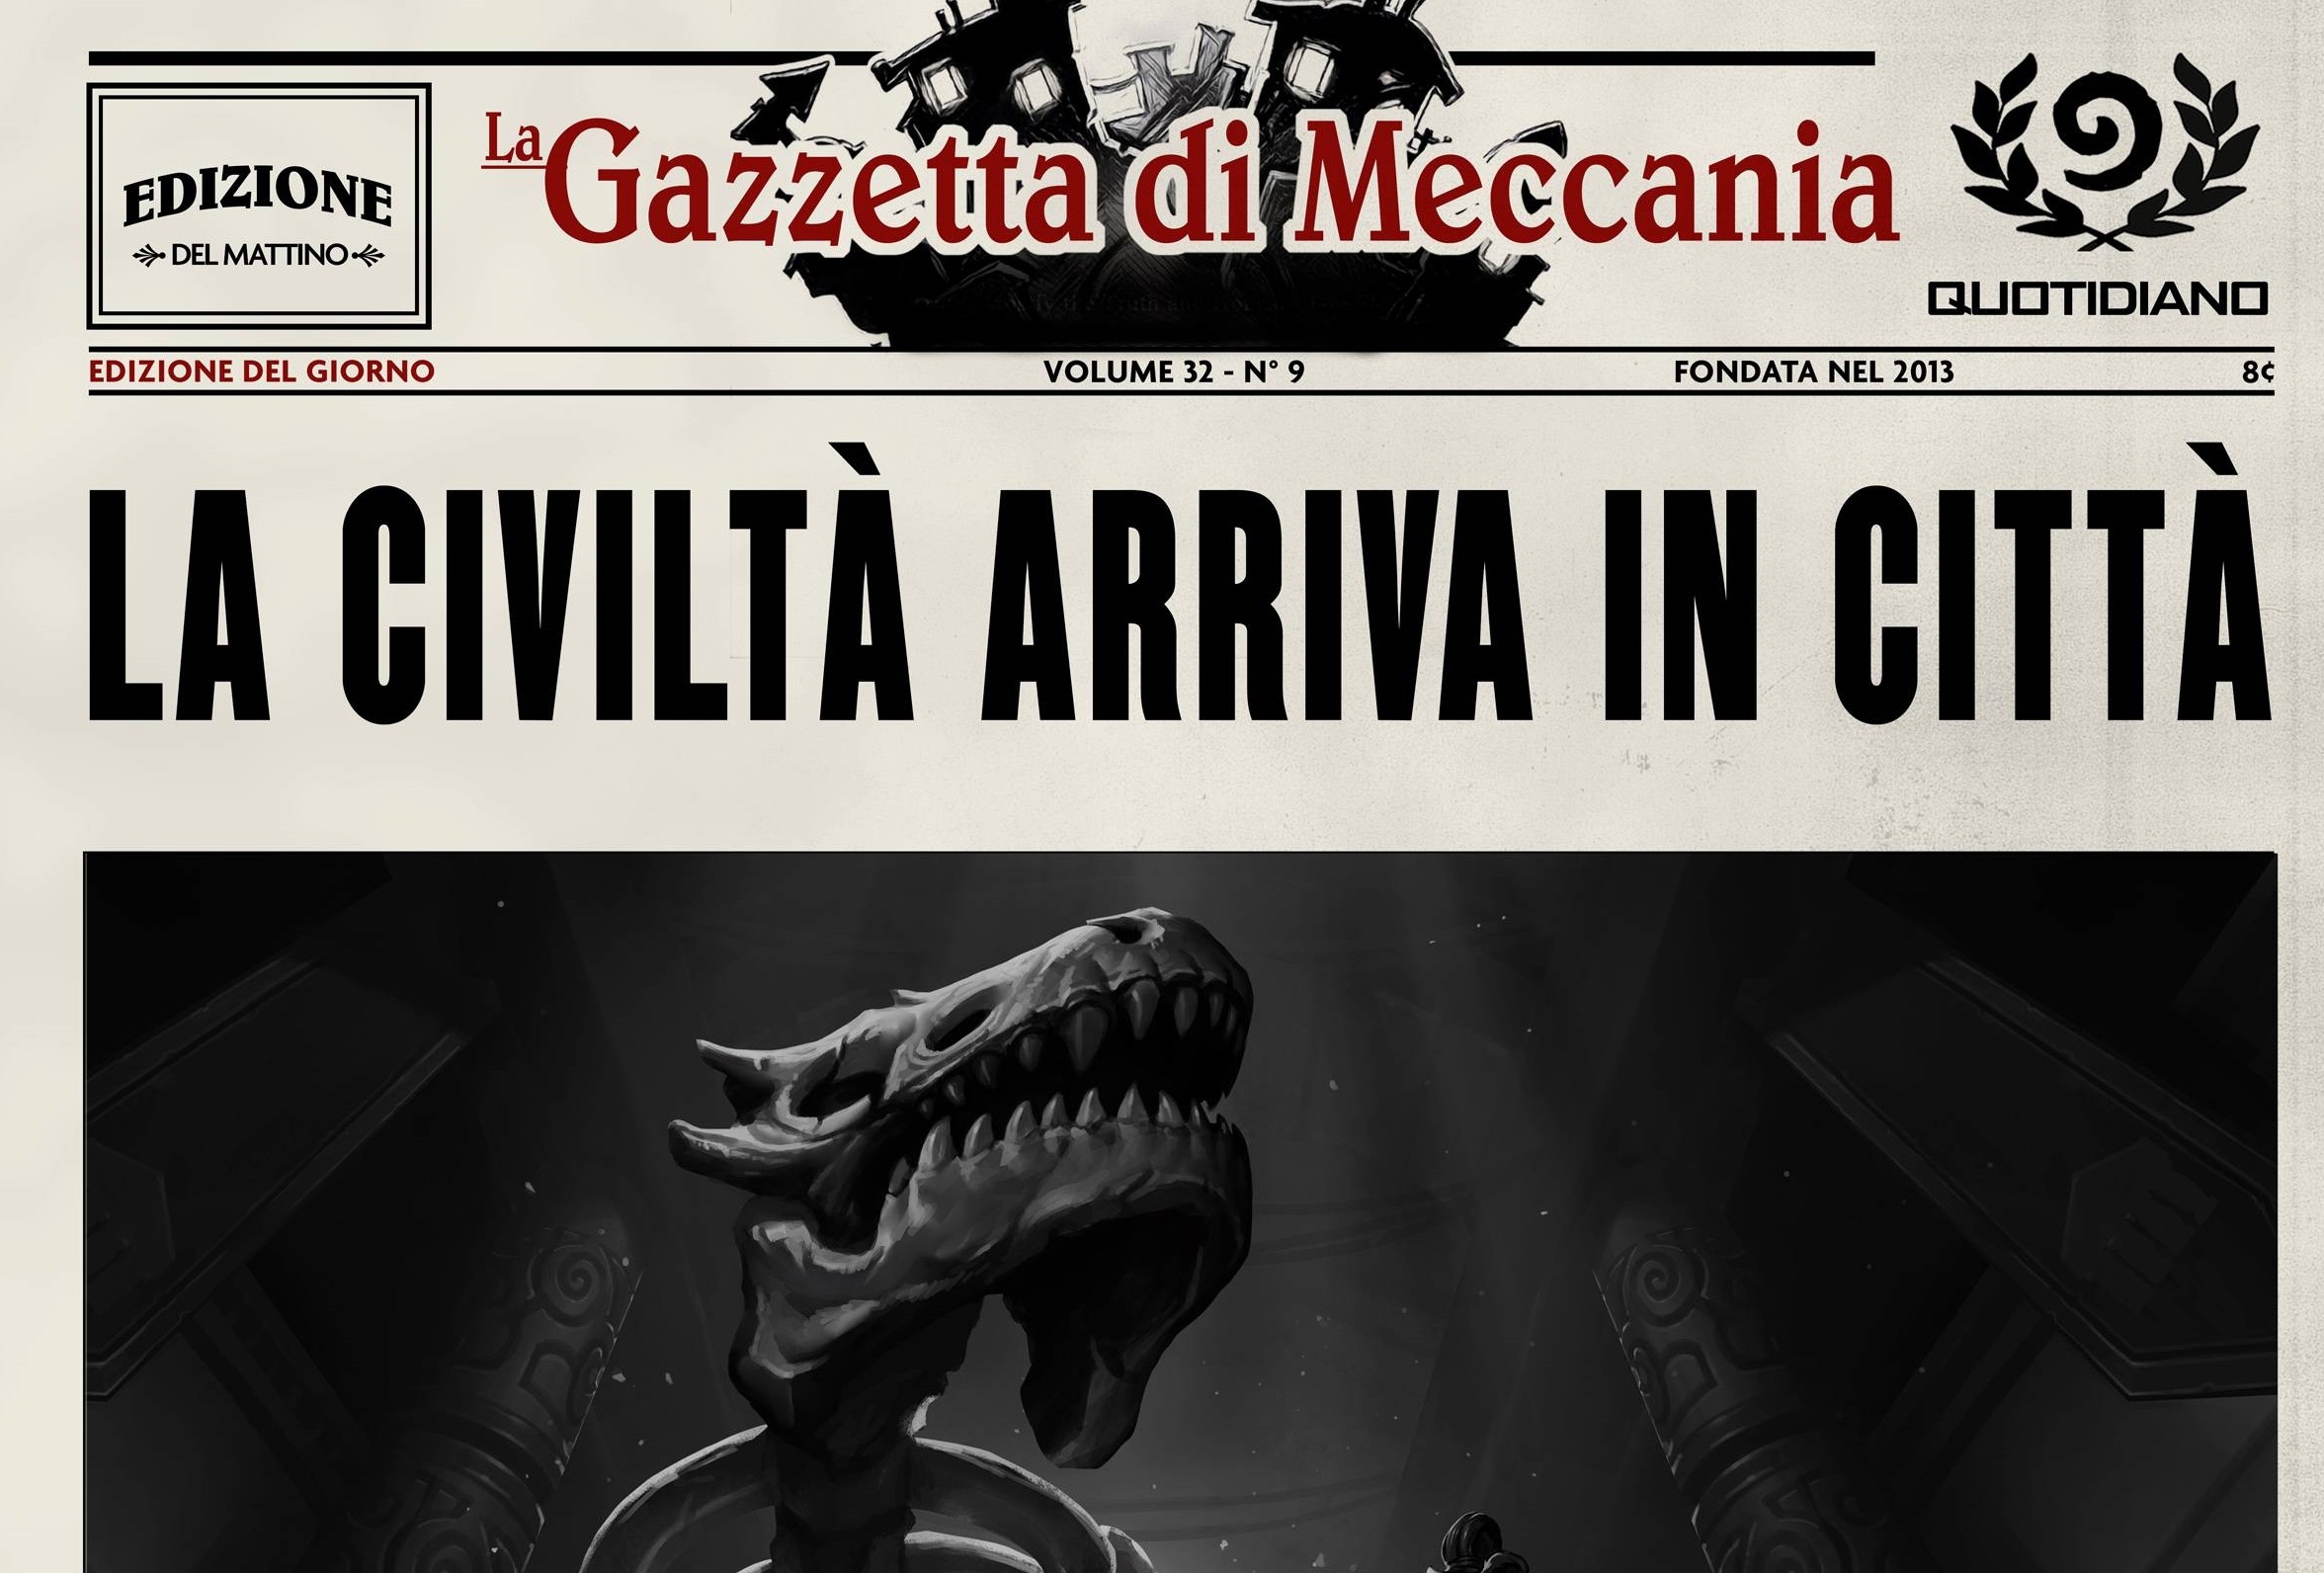 Gazzetta di Meccania: online una nuova pagina!